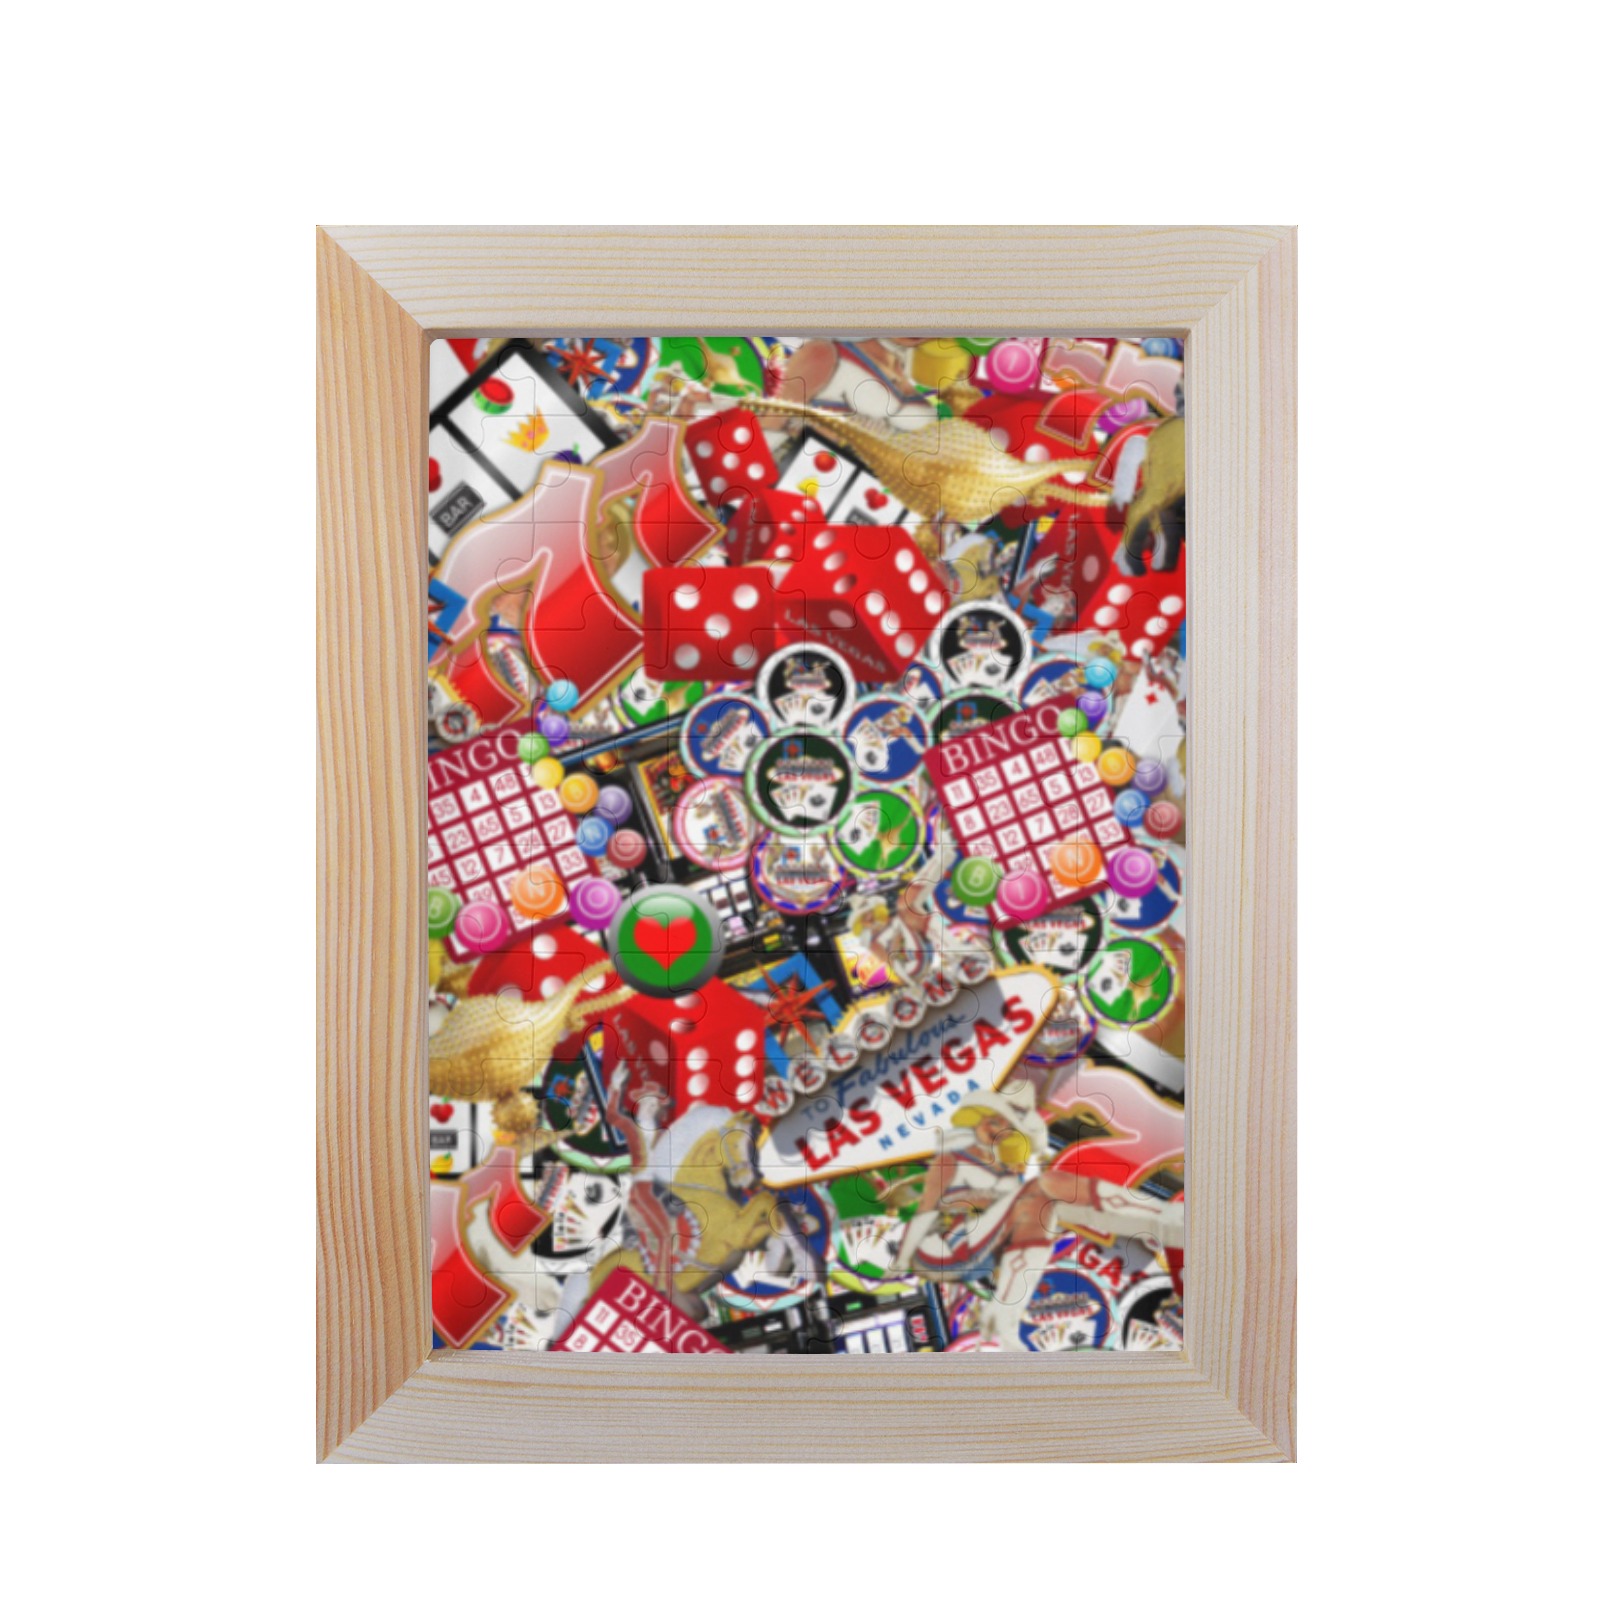 Gamblers Delight - Las Vegas Icons 60-Piece Puzzle Frame 7"x 9"